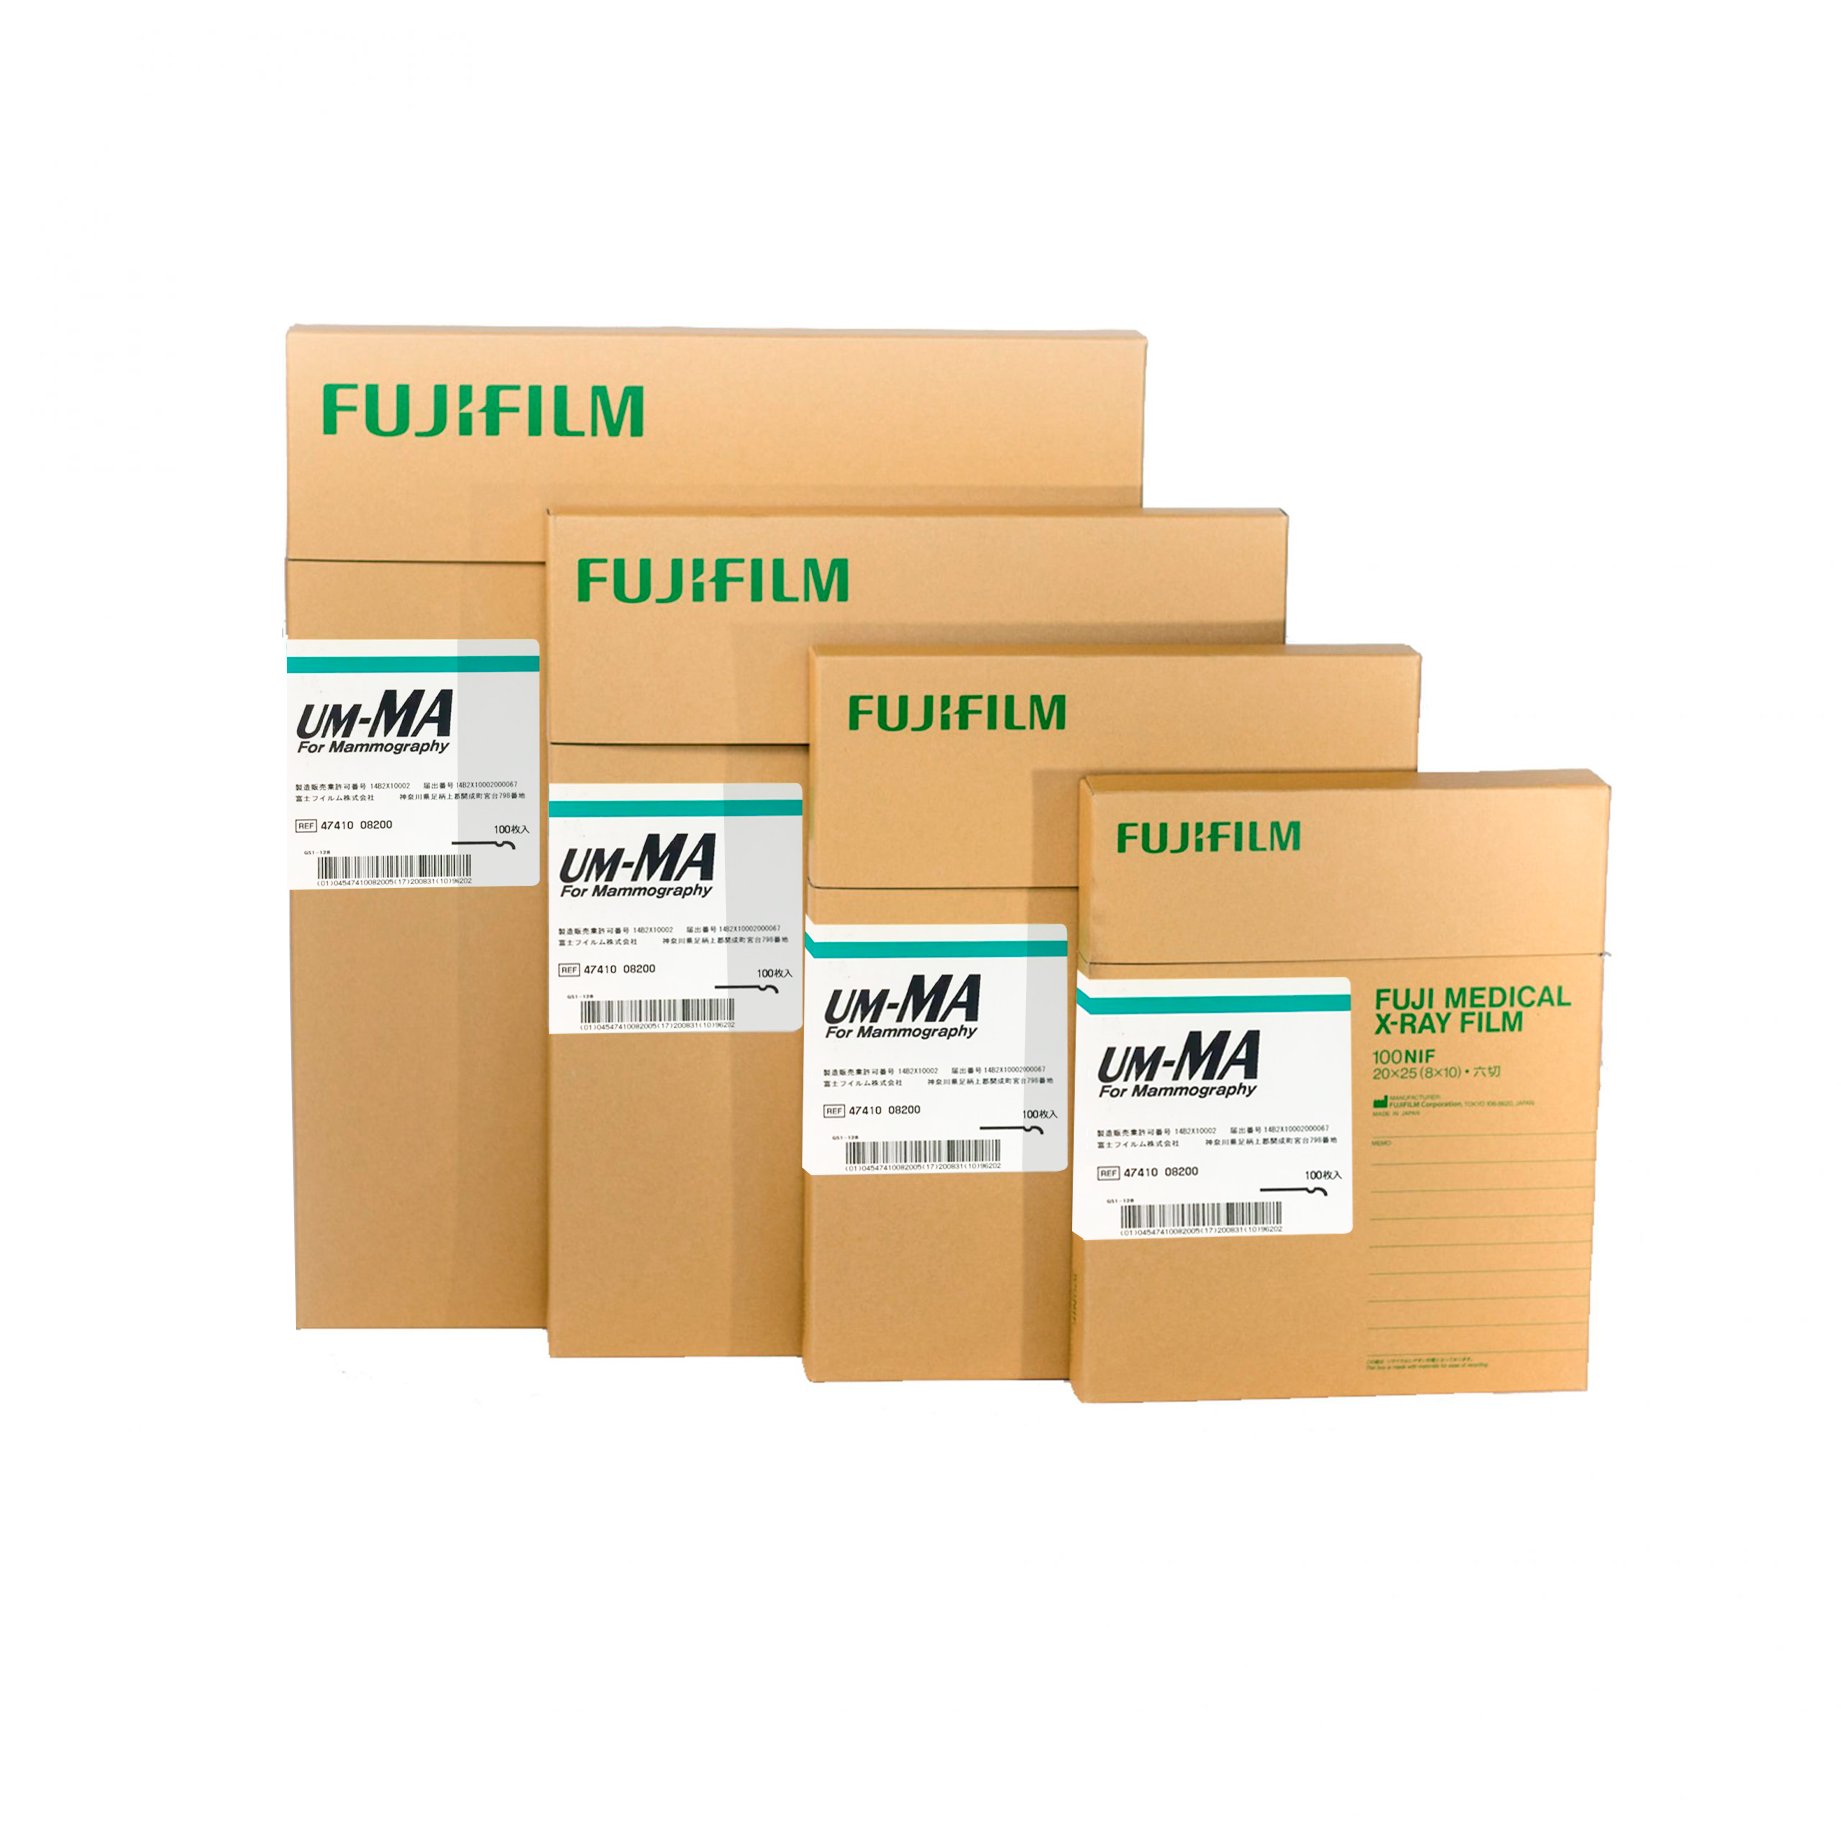 Película de mamografía UM-MA Fujifilm de base azul y emulsión de alta velocidad y resolución. Ofrece imágenes de alta calidad y consistencia. 